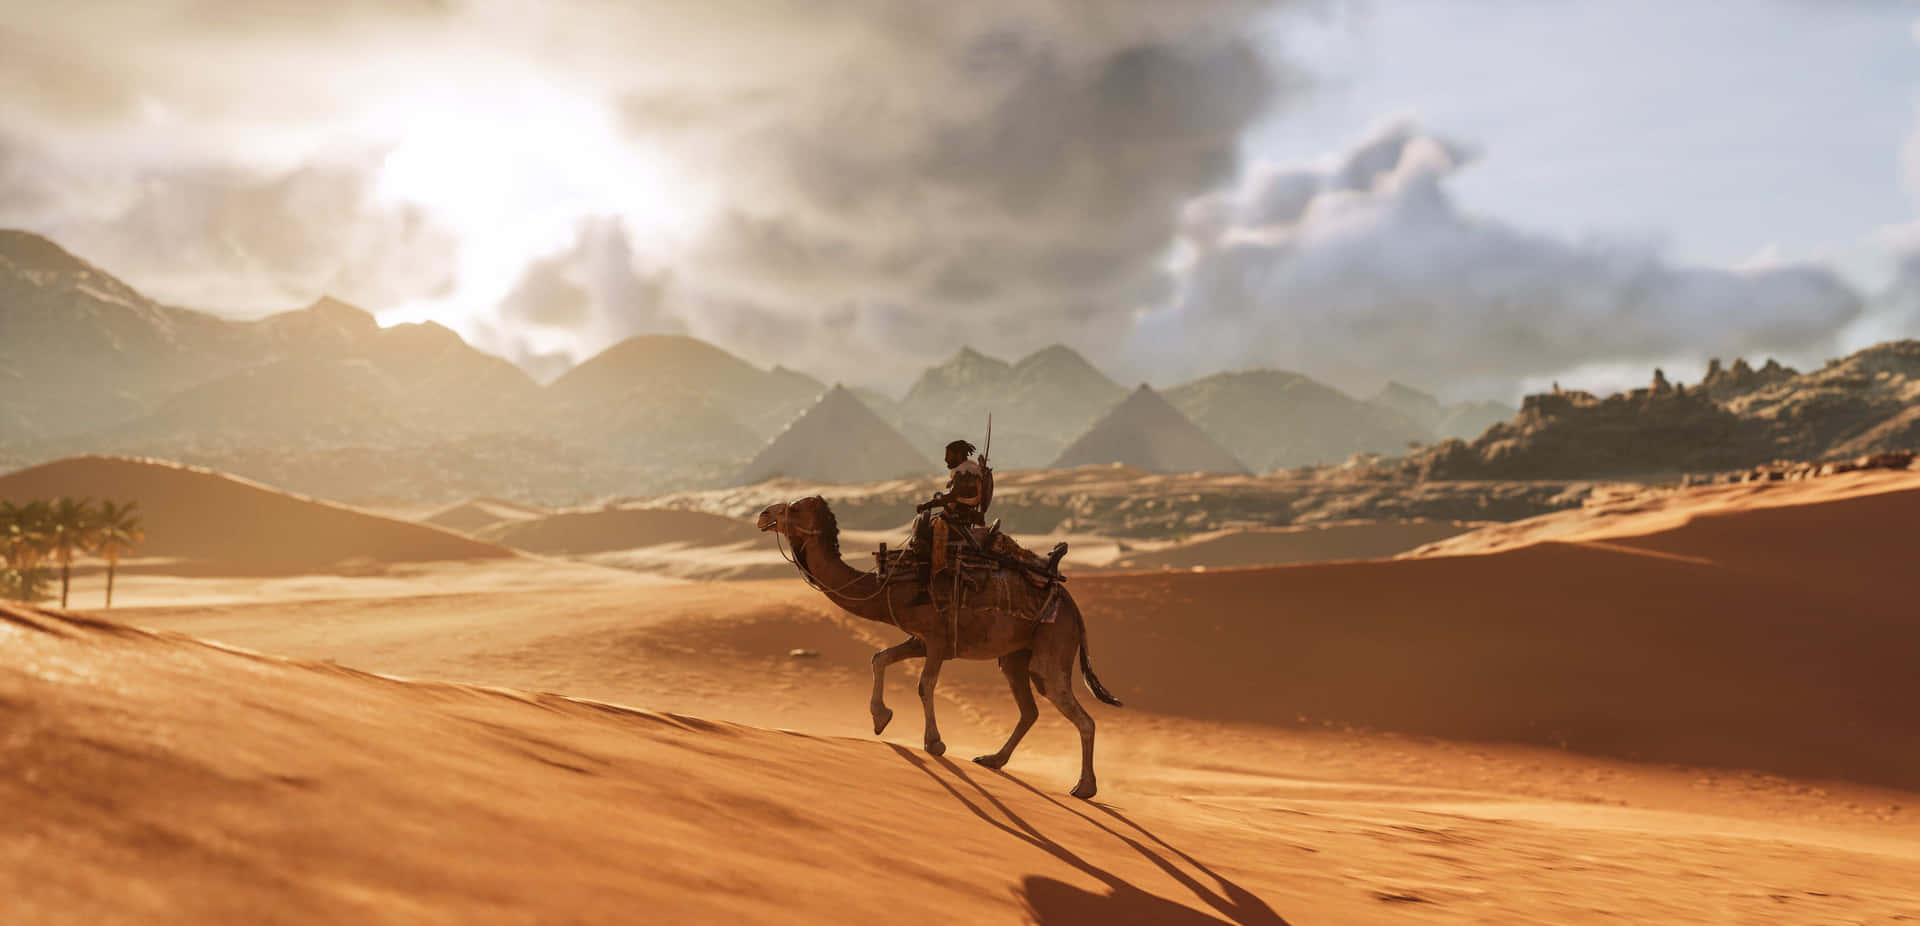 Emcima De Uma Duna De Areia, Majestoso Camelo